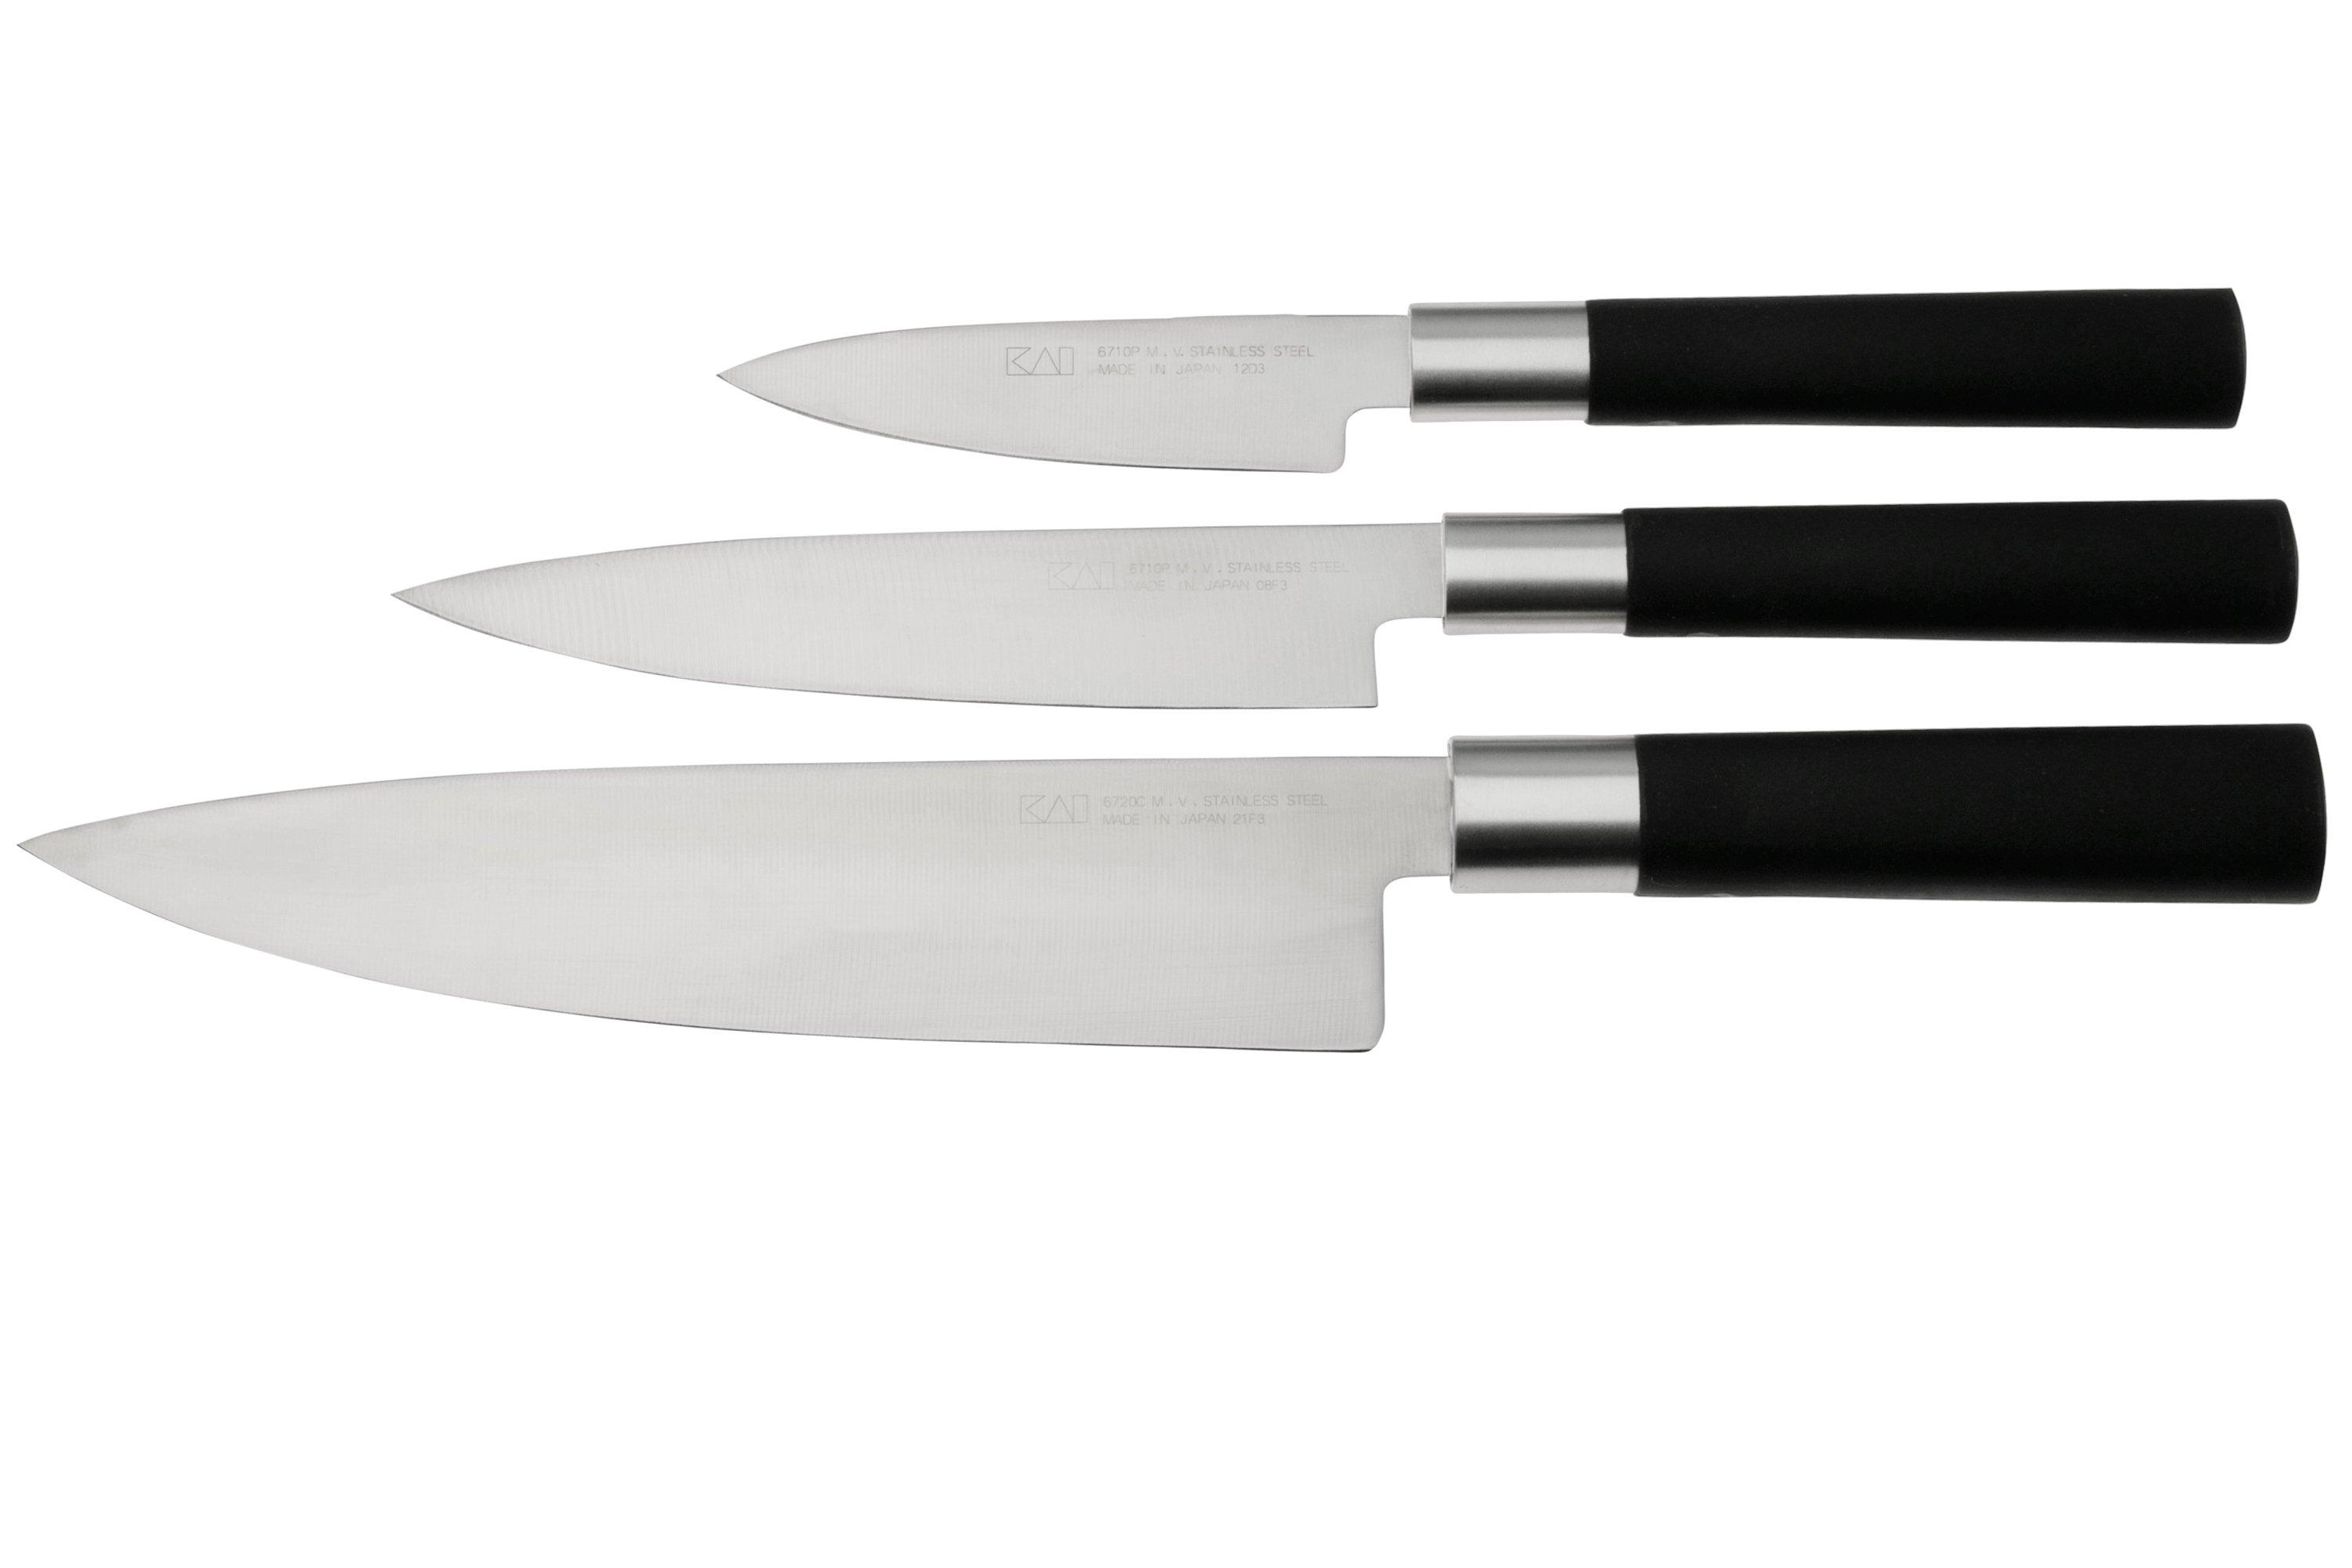 Kai Wasabi 67-WII knife set // Luxury For Men